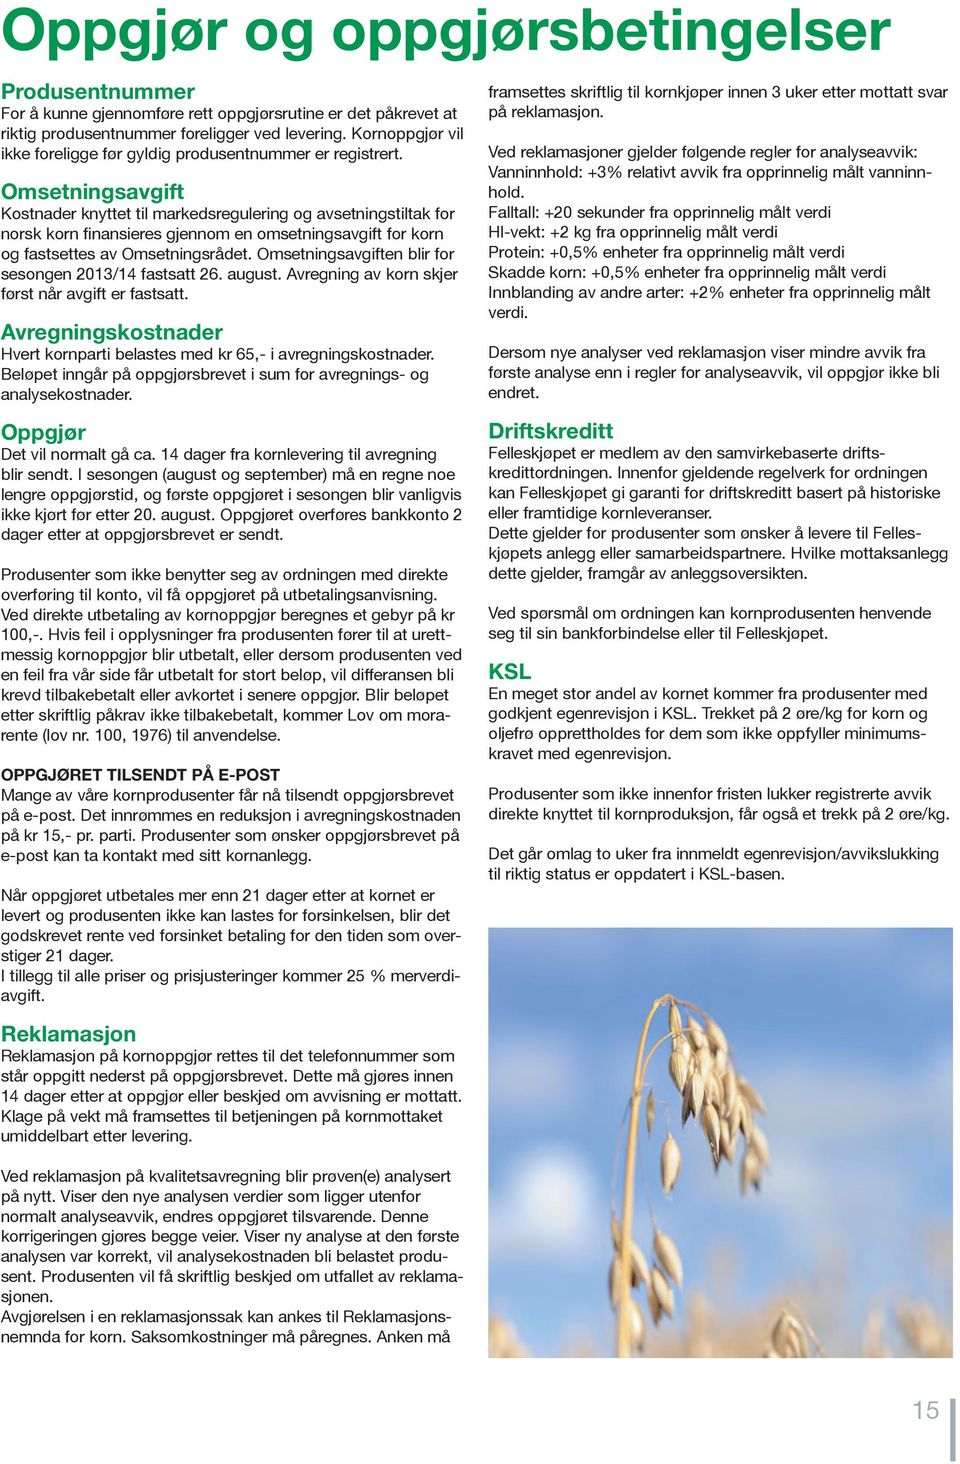 Omsetningsavgift Kostnader knyttet til markedsregulering og avsetningstiltak for norsk korn finansieres gjennom en omsetningsavgift for korn og fastsettes av Omsetningsrådet.